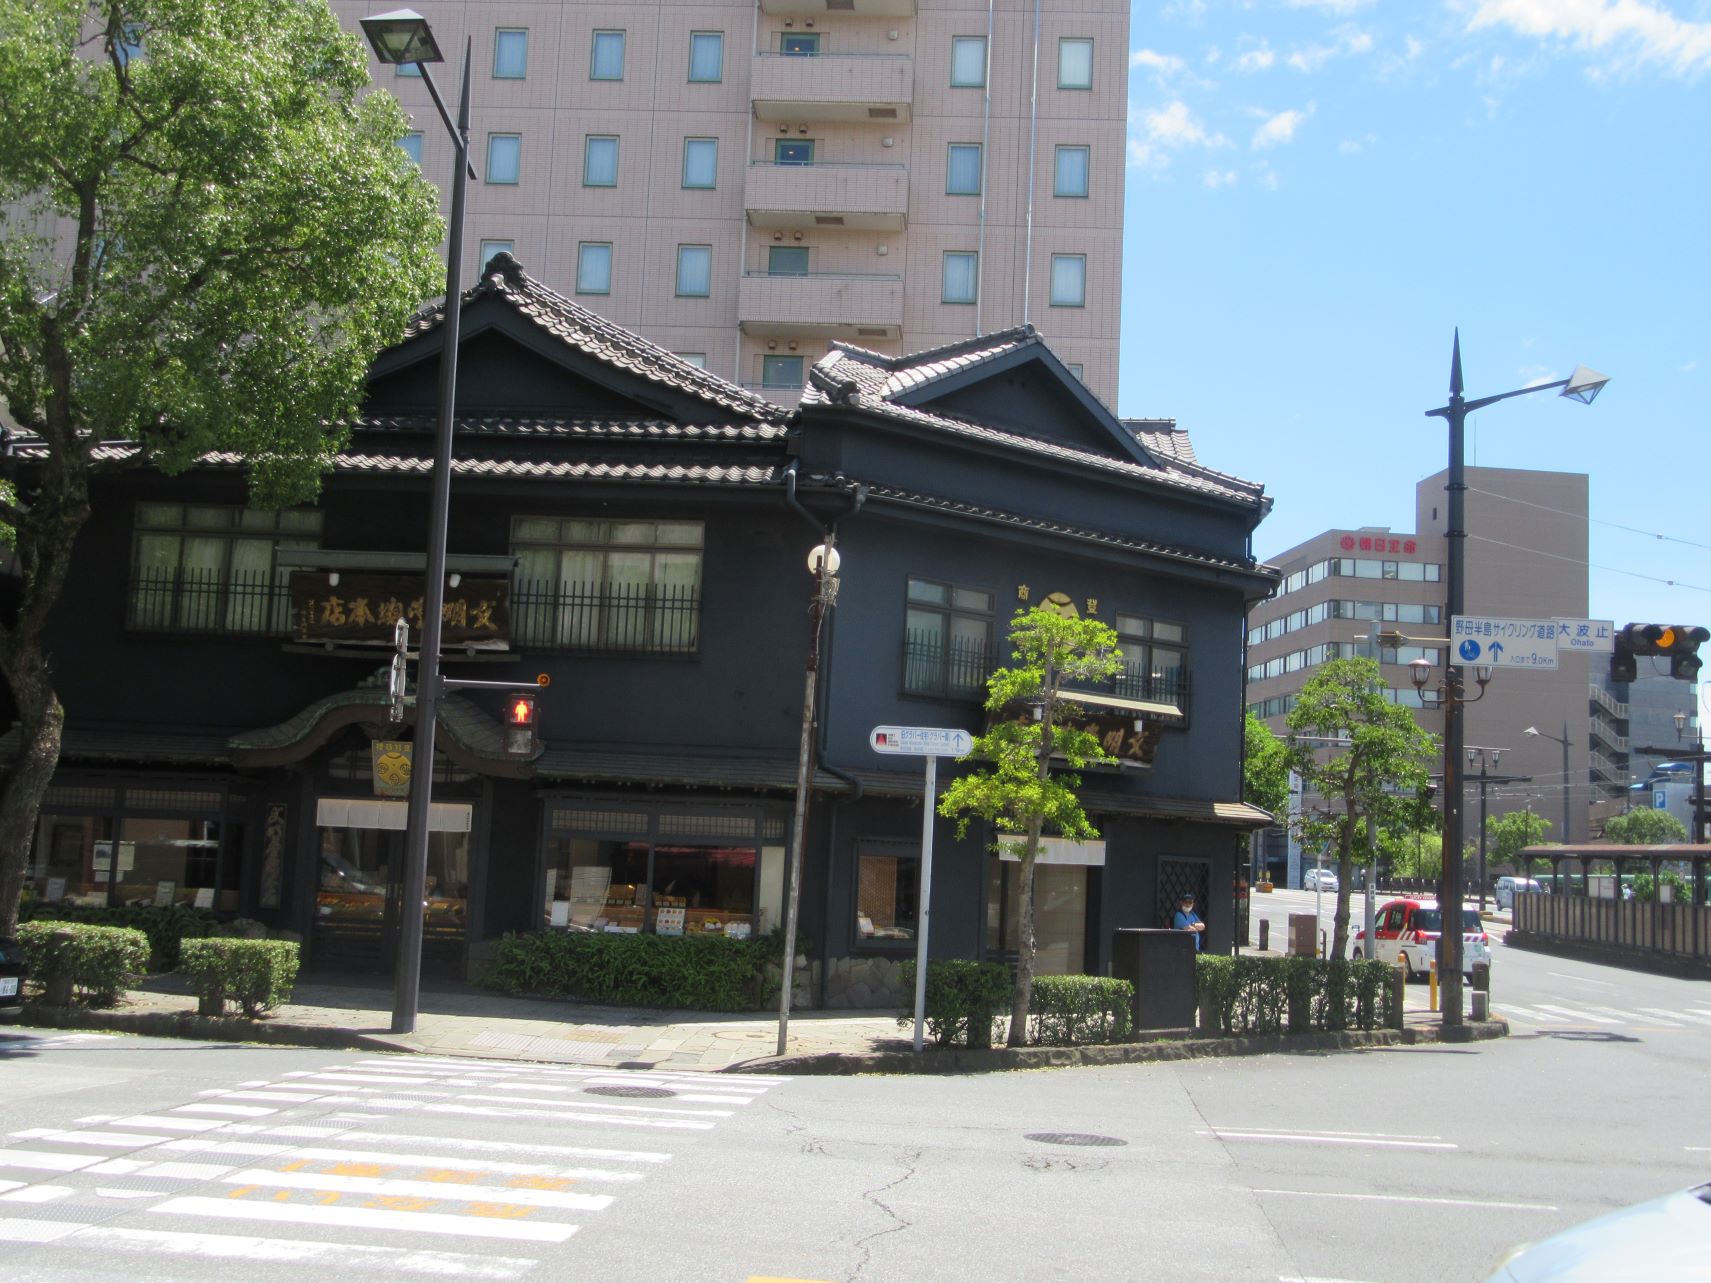 長崎市江戸町にある、文明堂総本店。